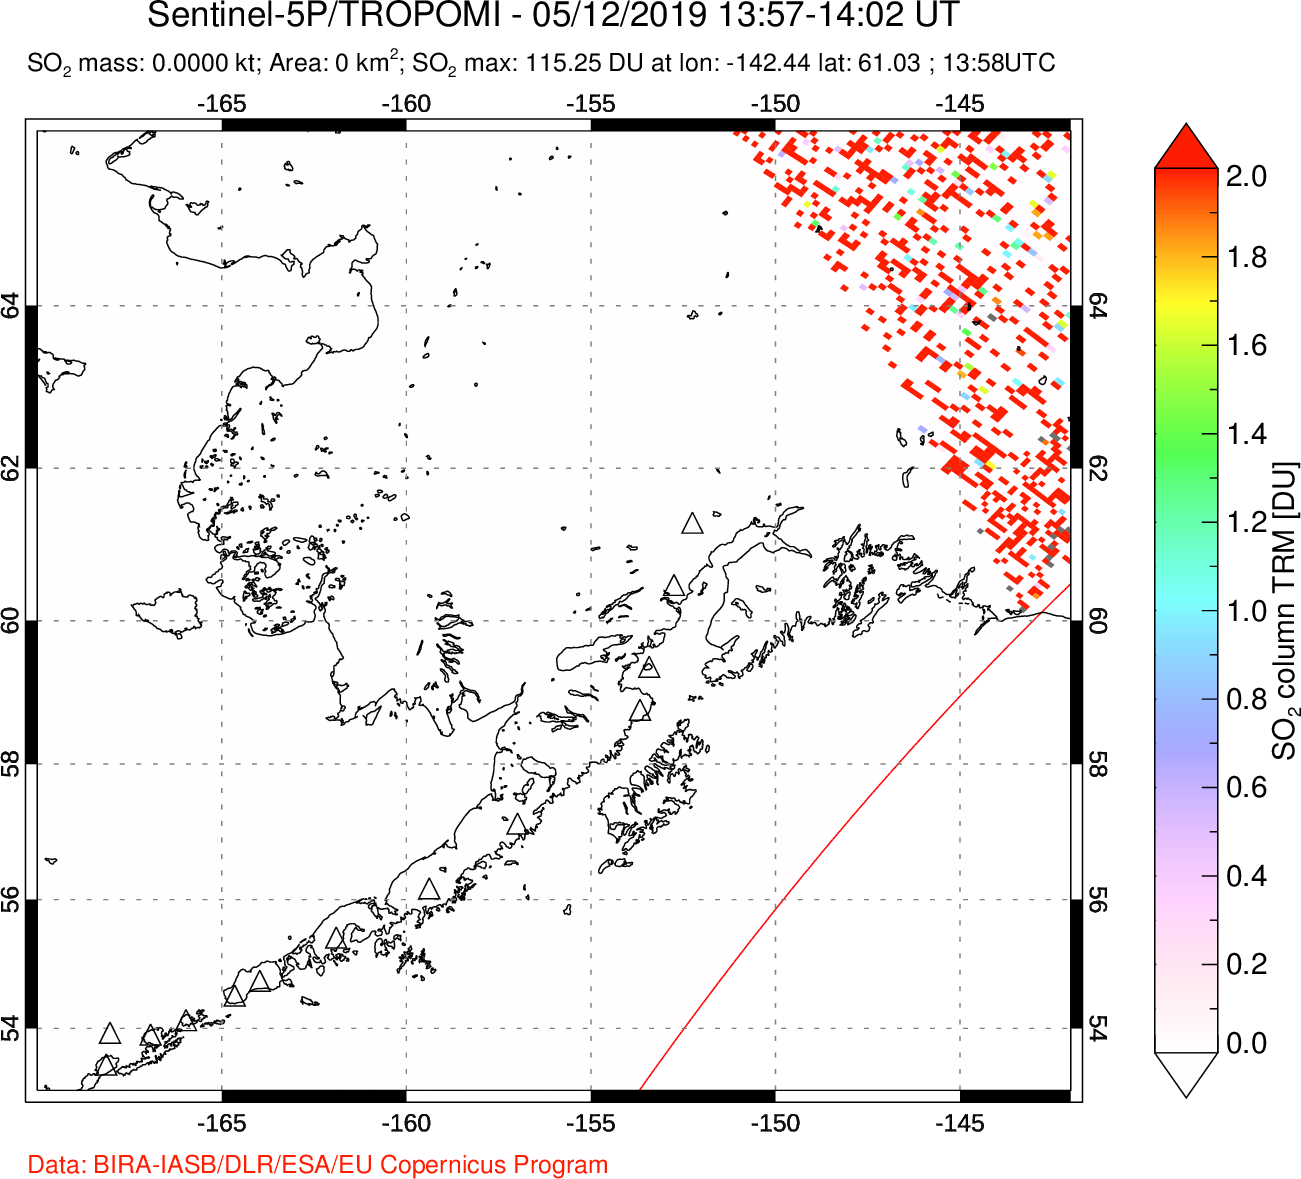 A sulfur dioxide image over Alaska, USA on May 12, 2019.